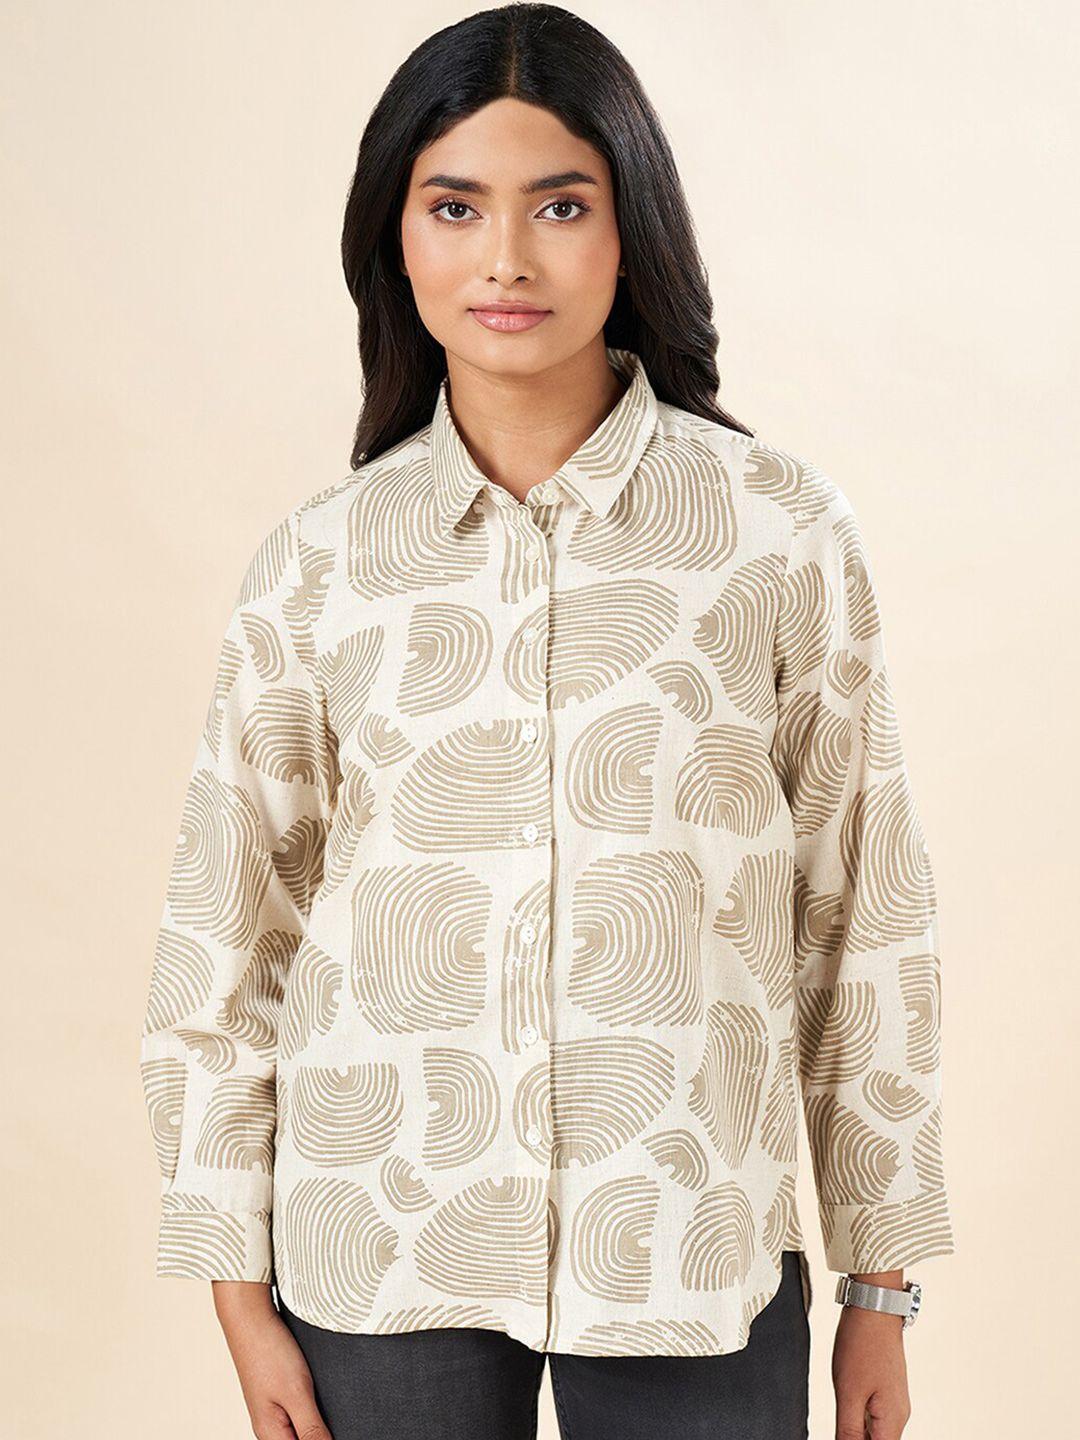 akkriti by pantaloons abstract printed cotton casual shirt